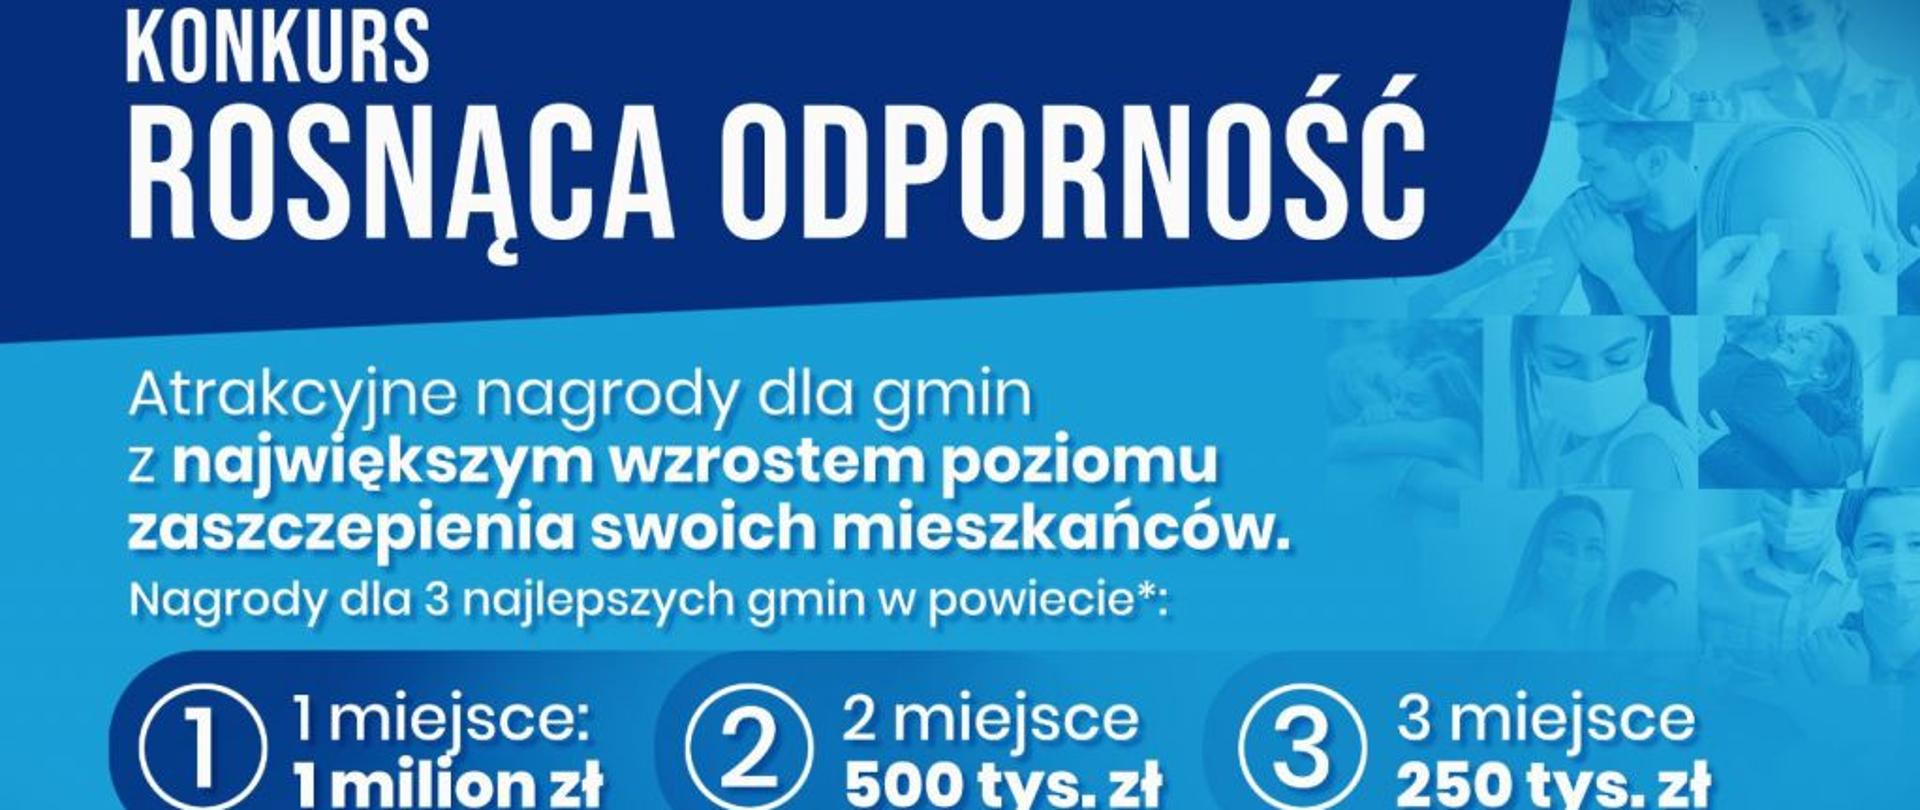 Plakat informujący o Konkursie Rosnąca Odporność, w którym do wygrania jest milion złoty dla gminy z największym wzrostem poziomu zaszczepienia wśród mieszkańców.